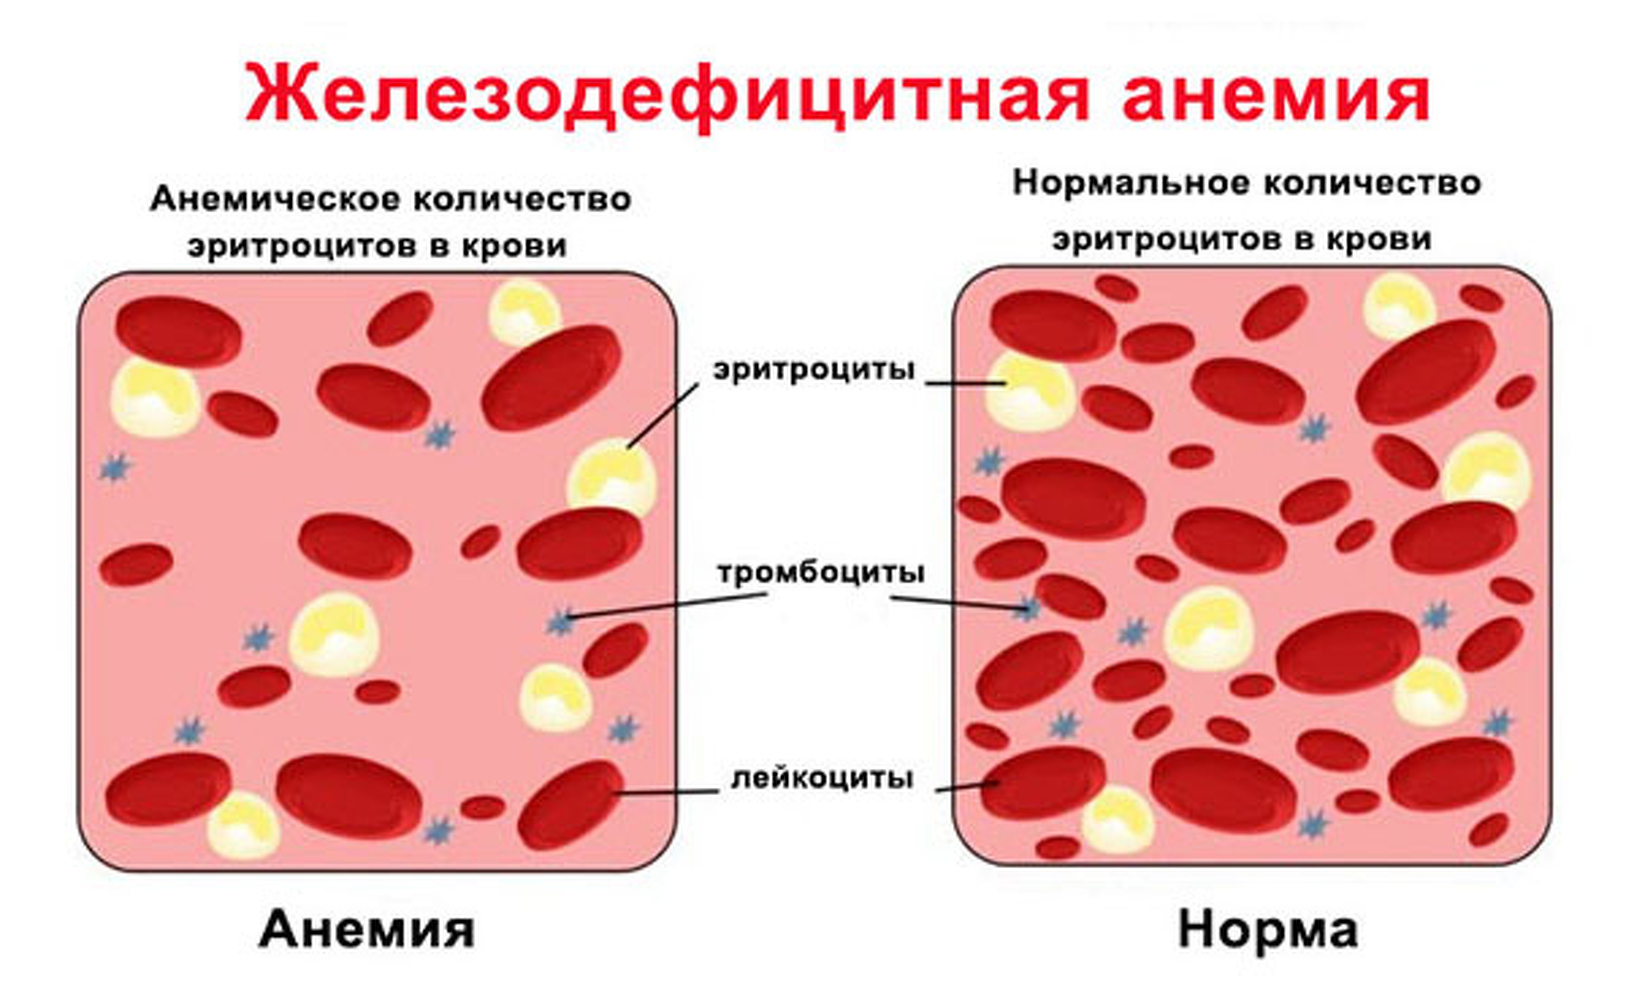 Что такое анемия и как с ней бороться? – статья на сайте Аптечество, Нижний Новгород